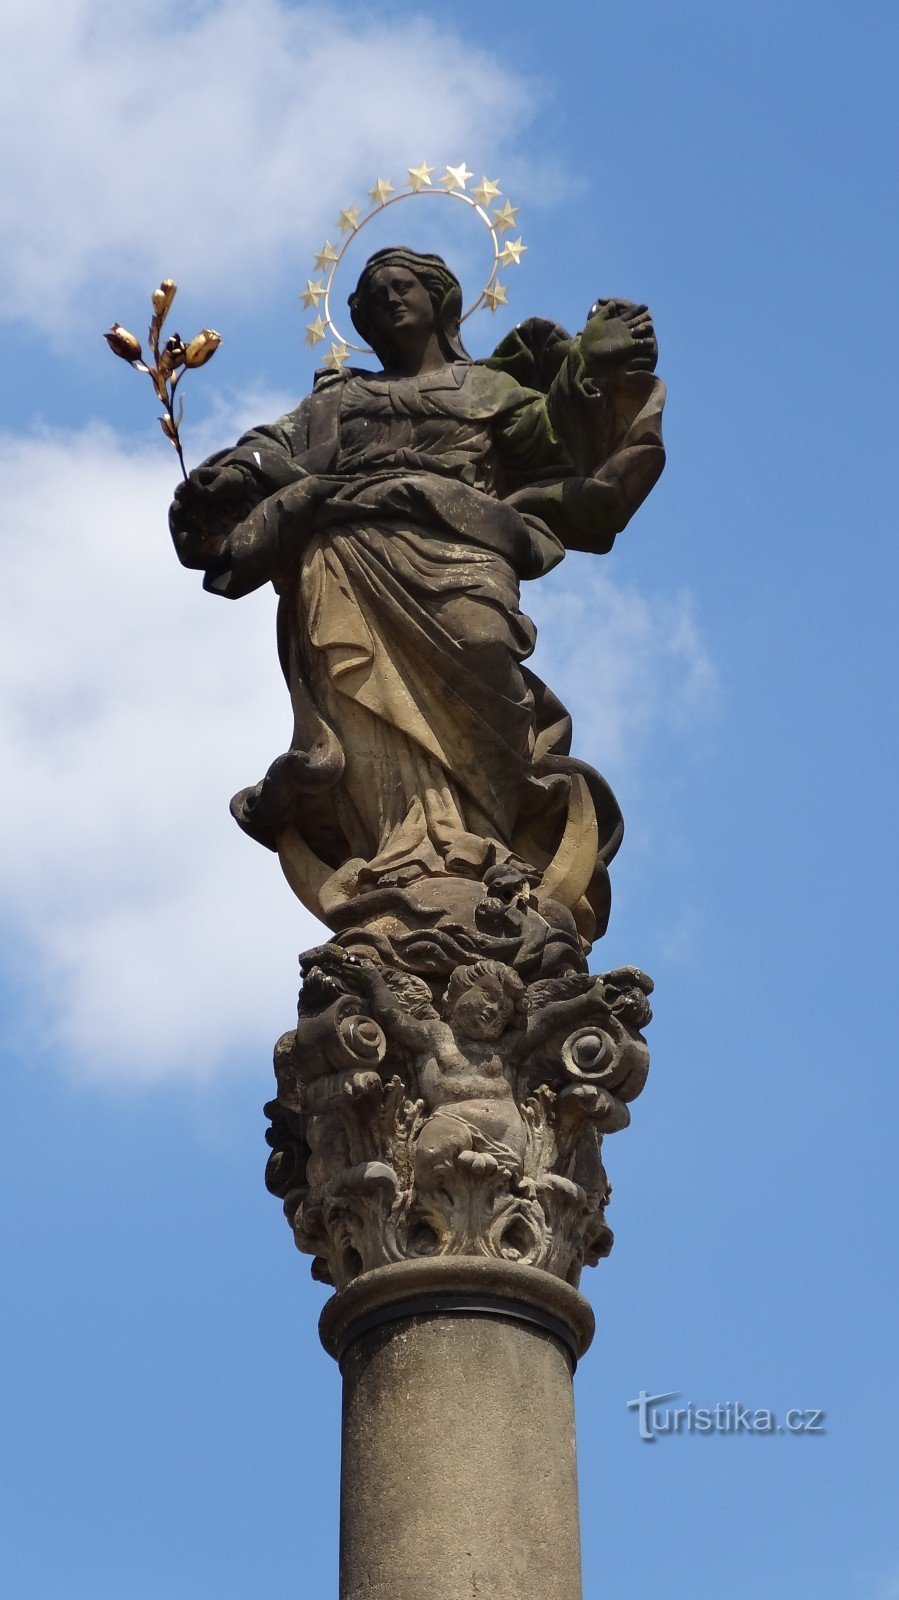 Una estatua encima de una columna